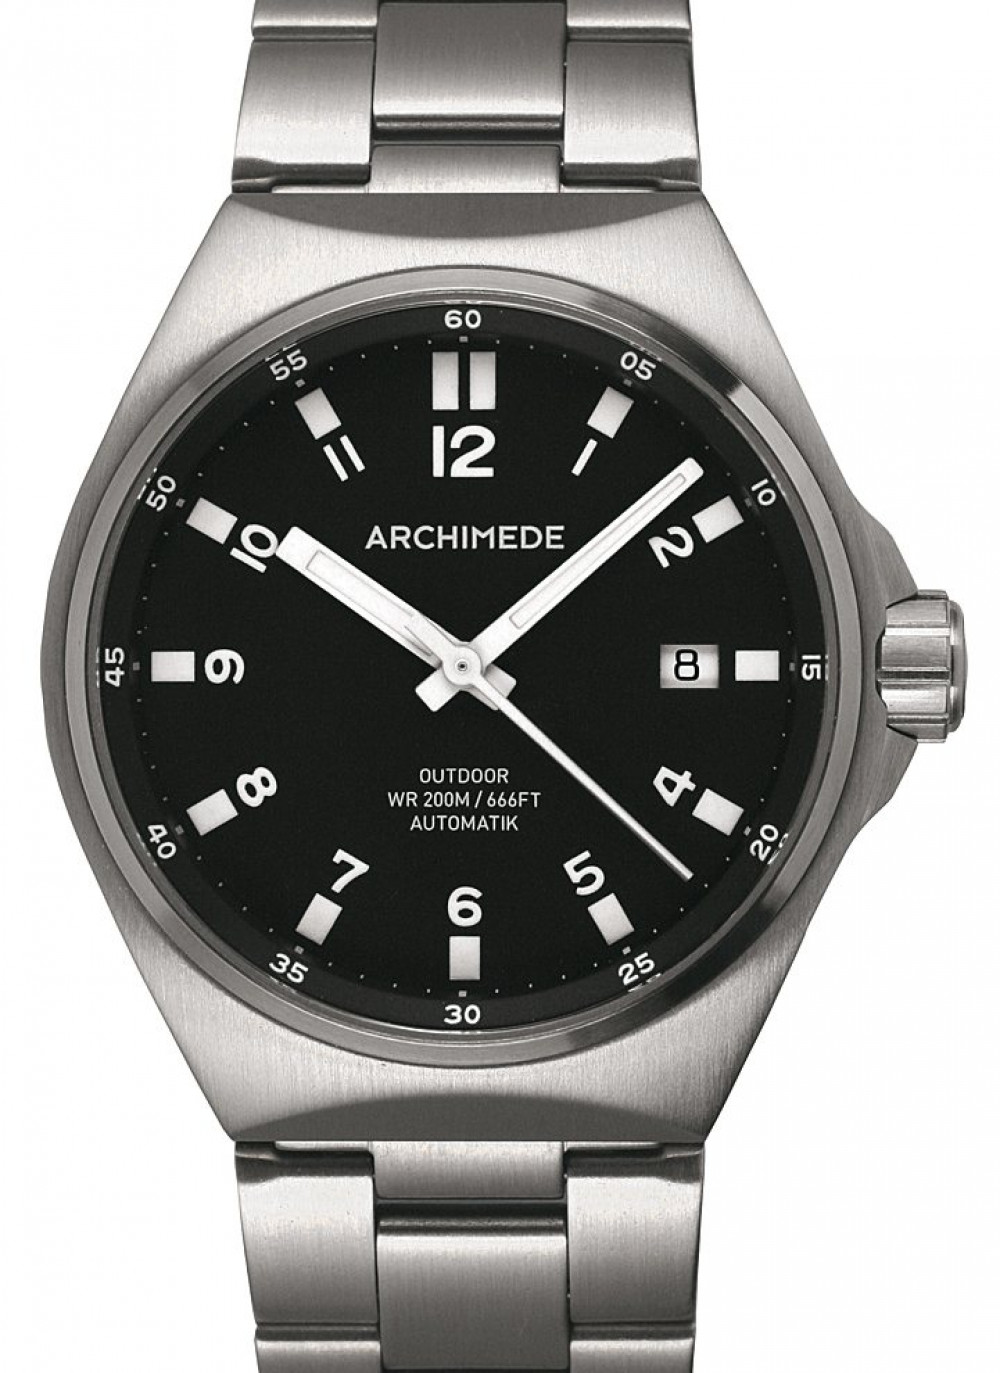 Zegarek firmy Archimede, model Outdoor Sport